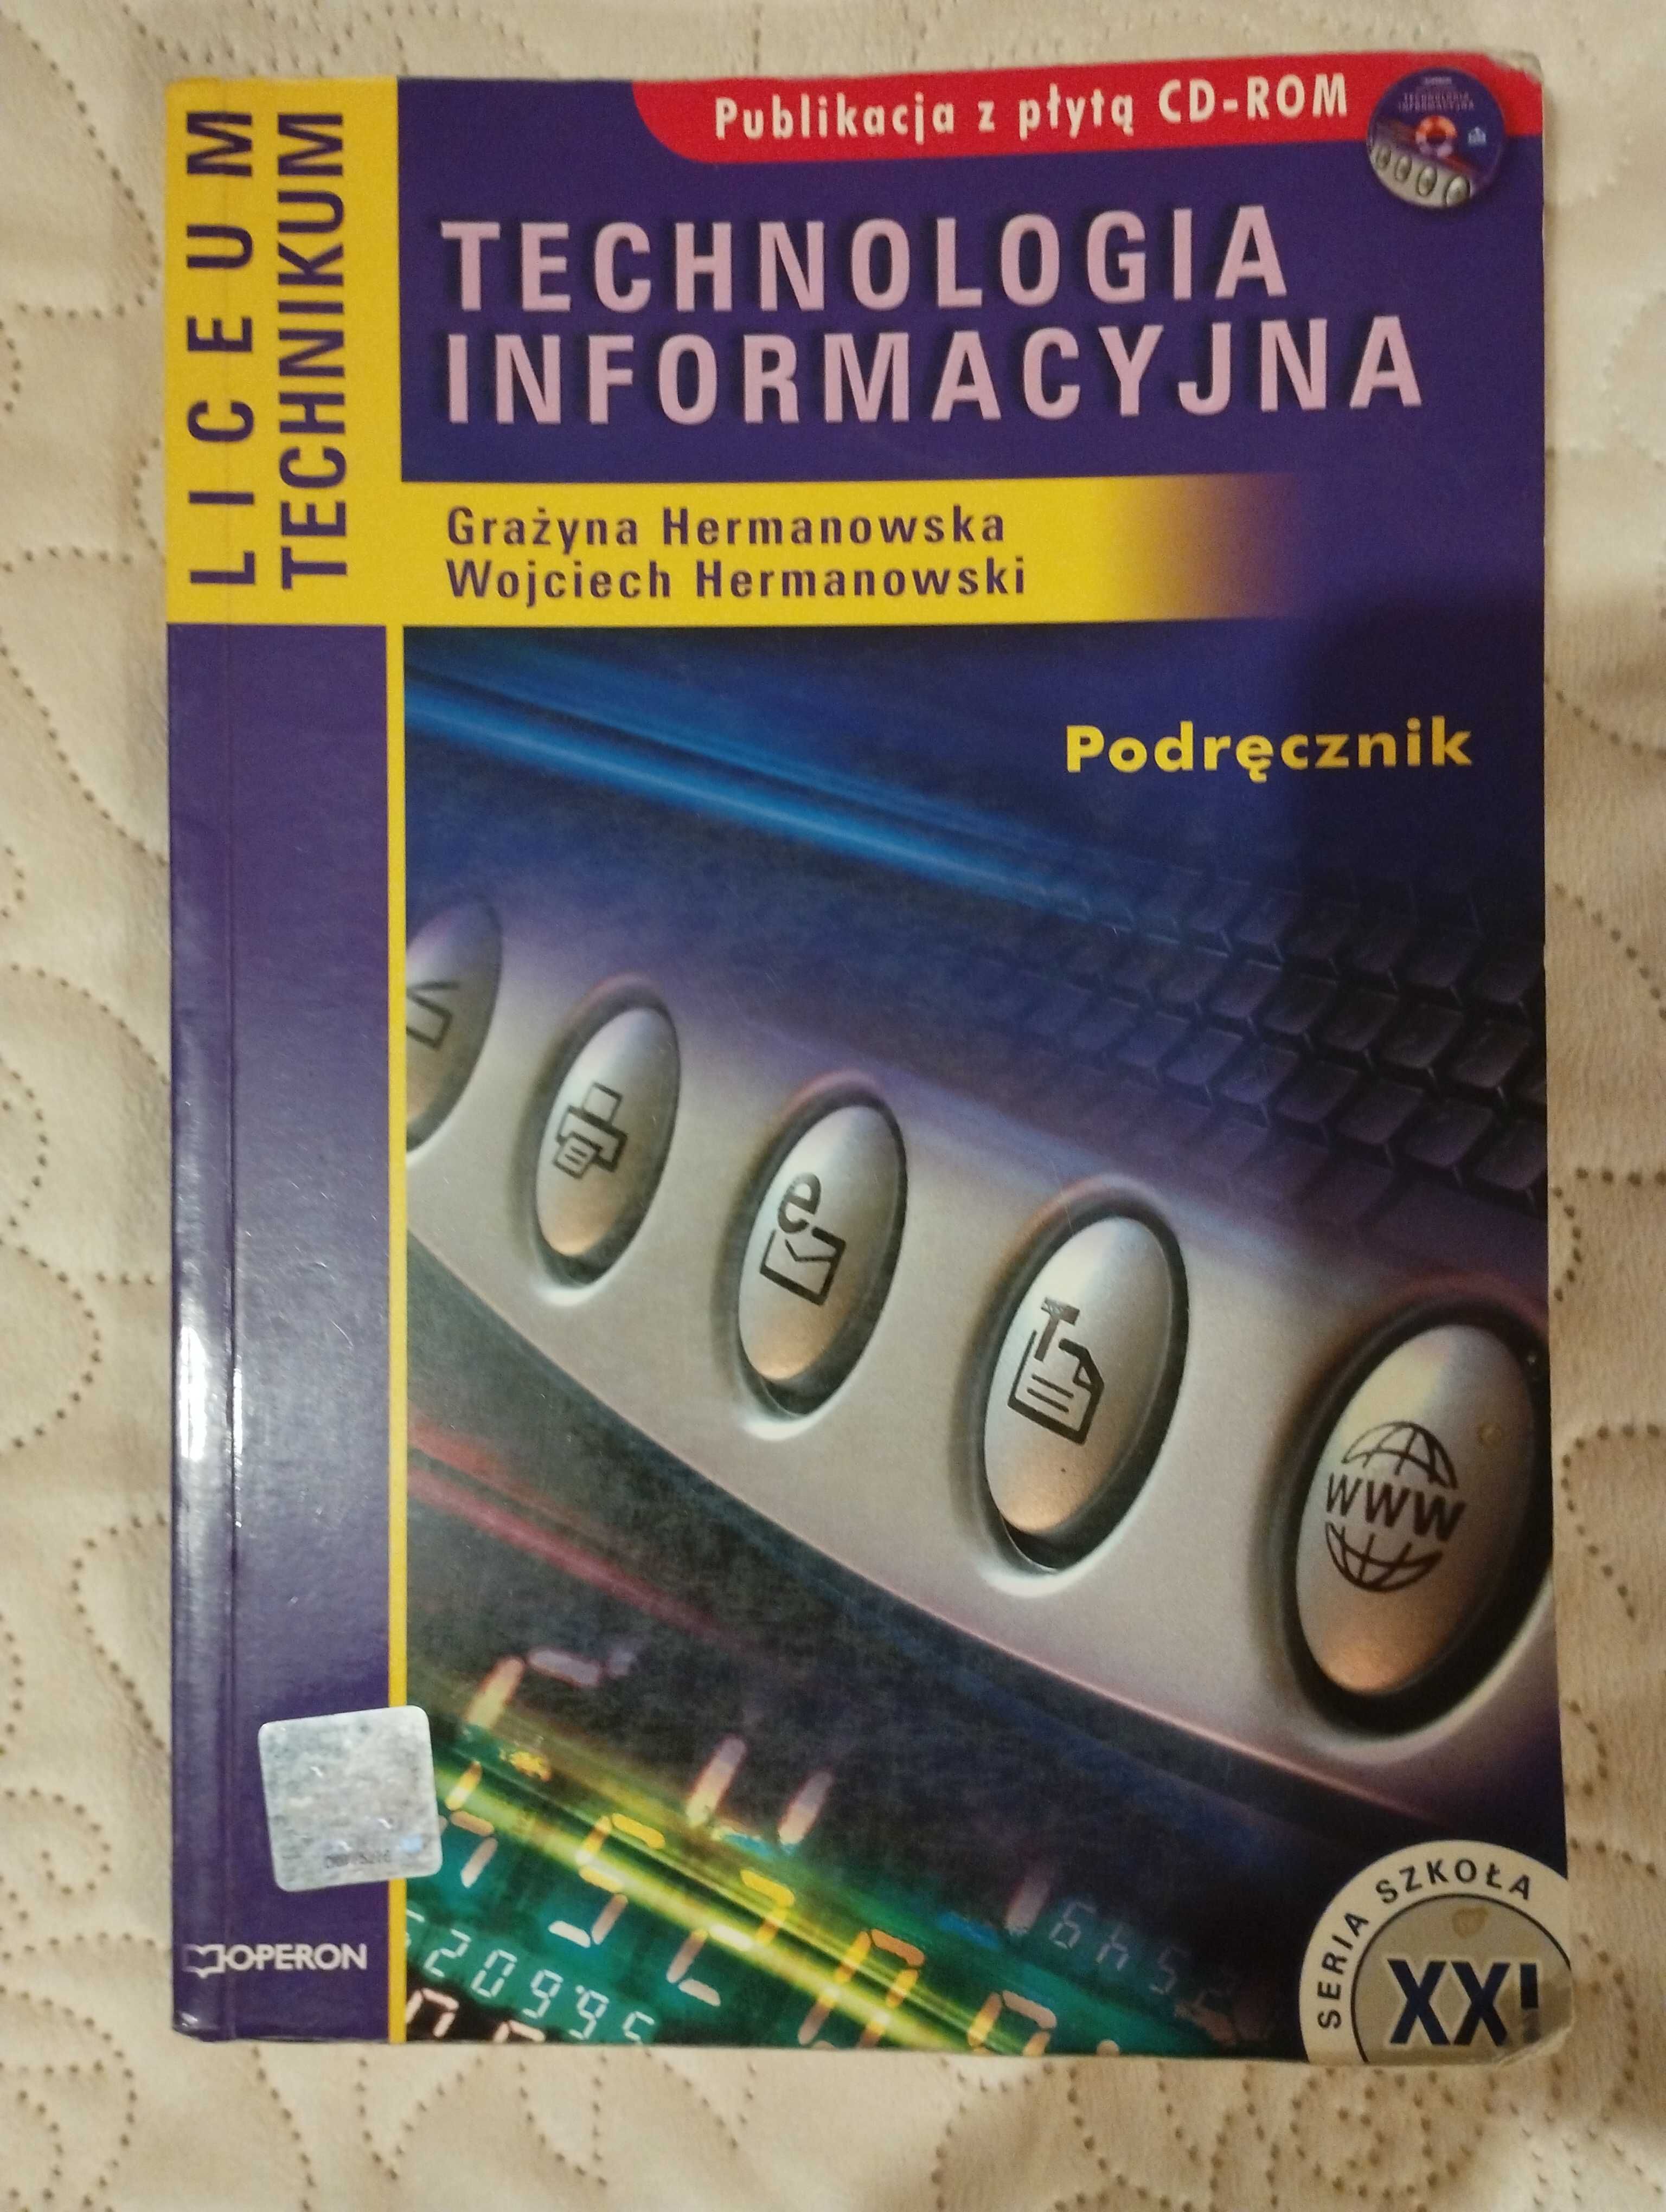 Technologia informacyjna. Podręcznik, Operon, 2008 (z płytą)